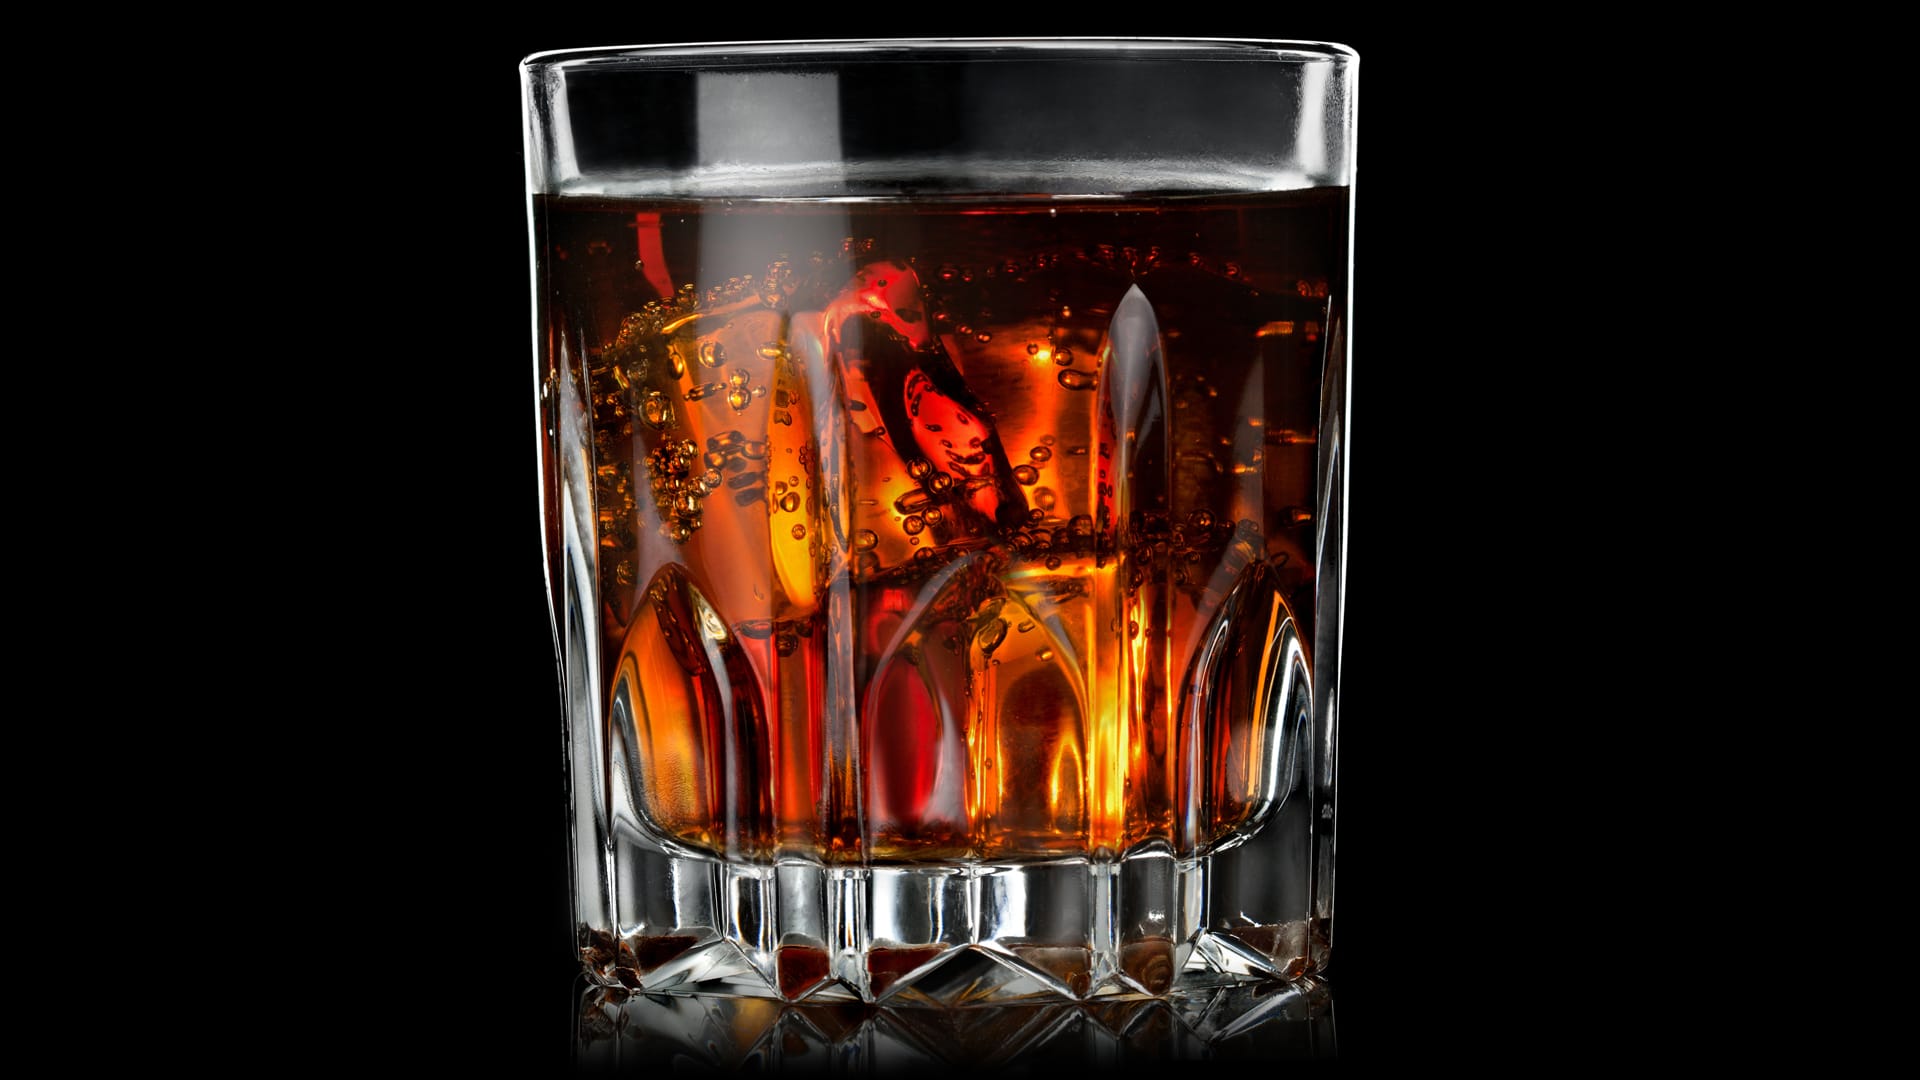 "Yak", wie Cognac in den USA heißt, wird dort auf Eis mit Cola getrunken – besonders bei Rappern ein echtes Trendgetränk.